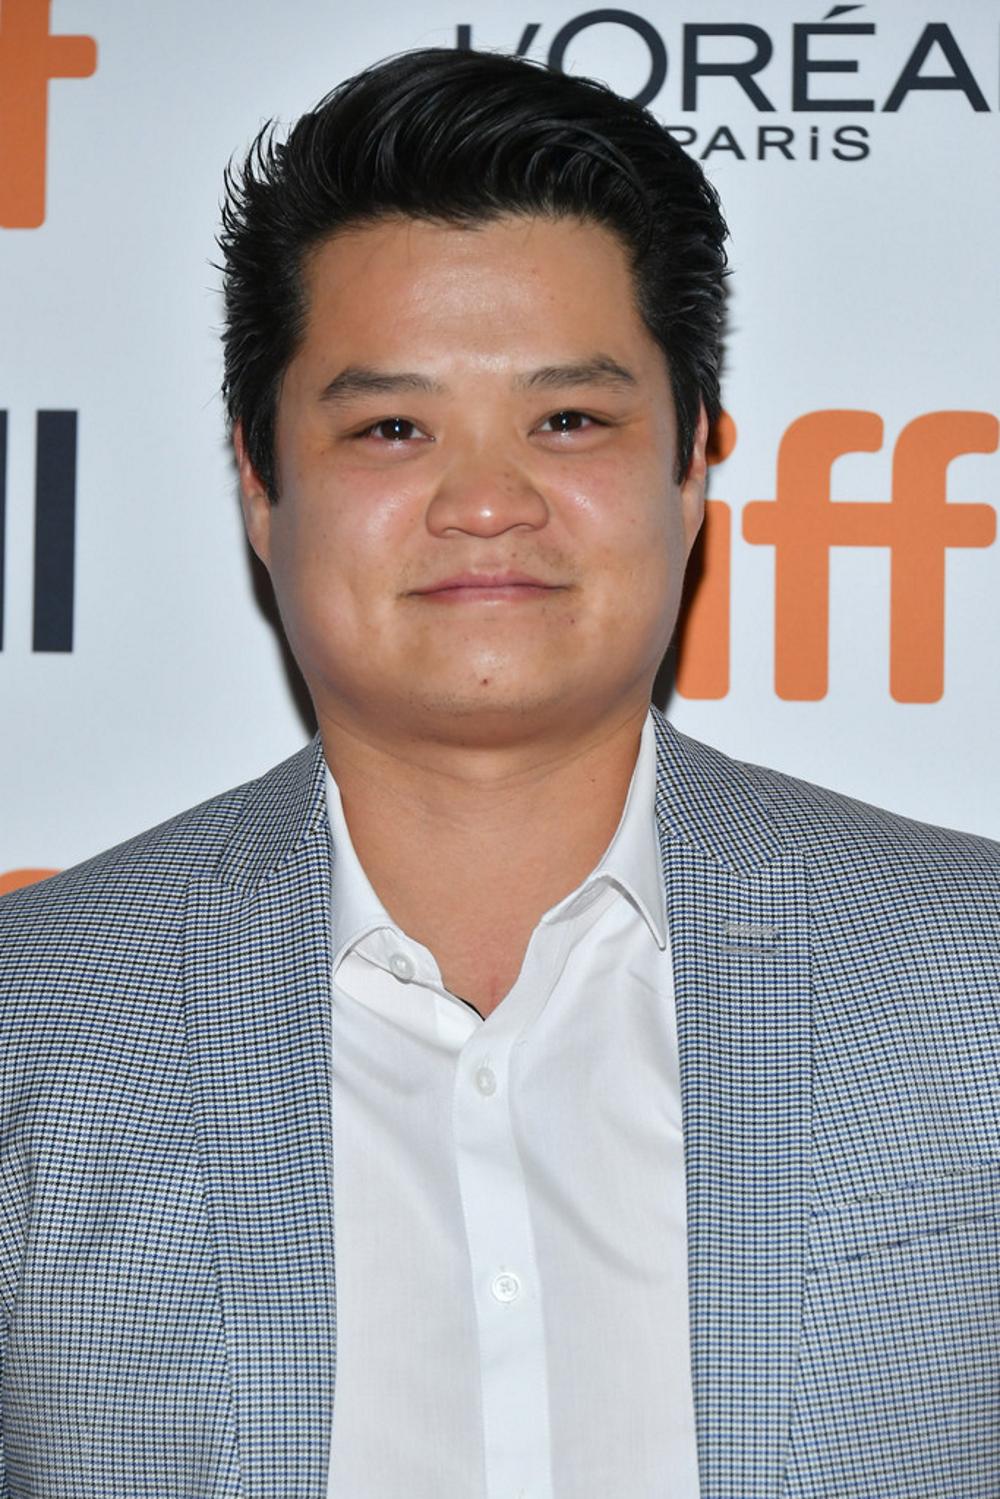 Jason Chen alla premiere TIFF di Jojo Rabbit, 2019 [Photo: Getty Images]